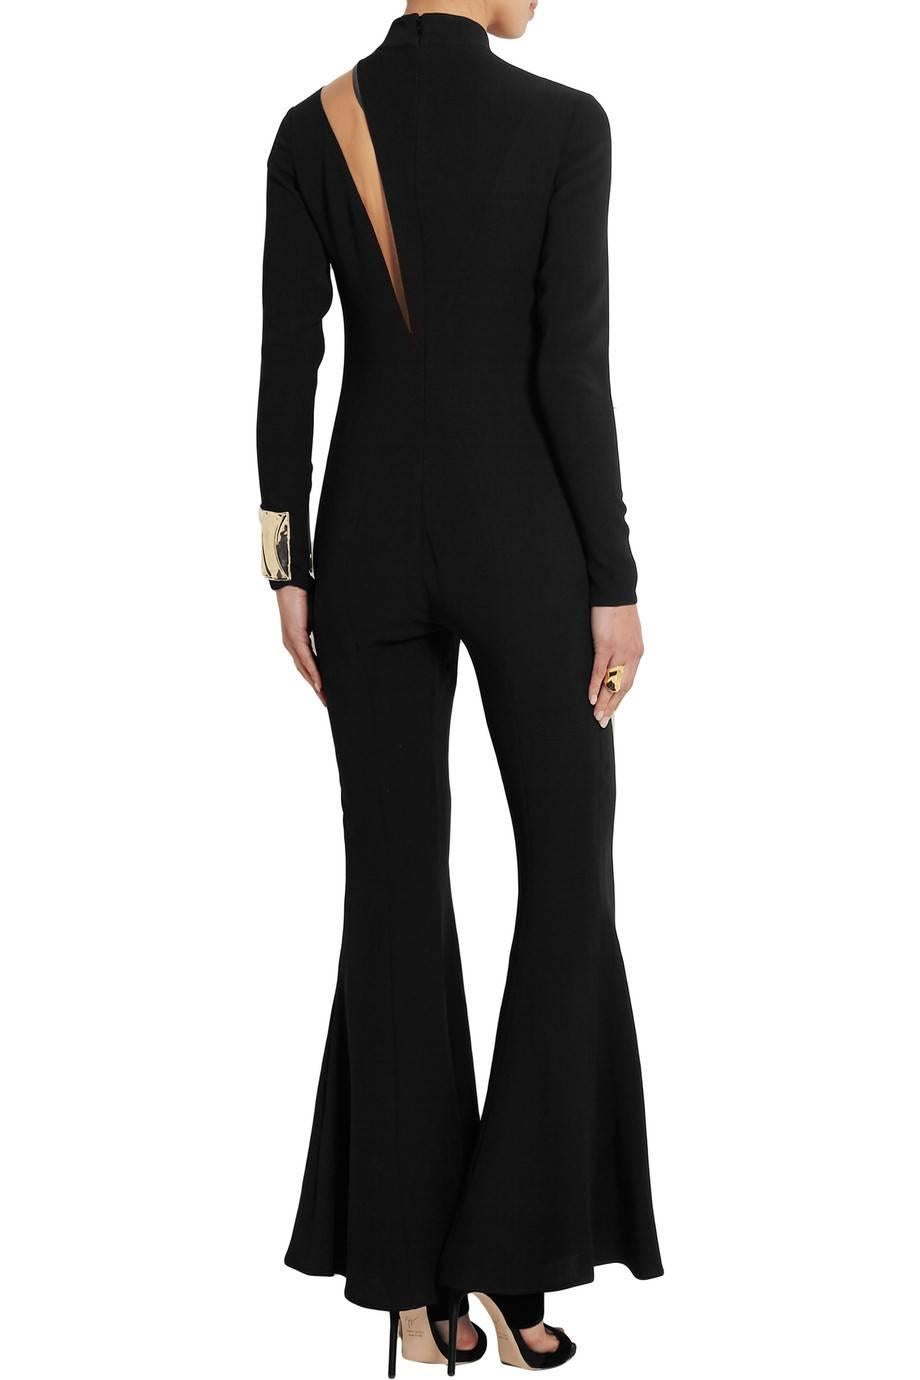 Versace Black Jumpsuit 1